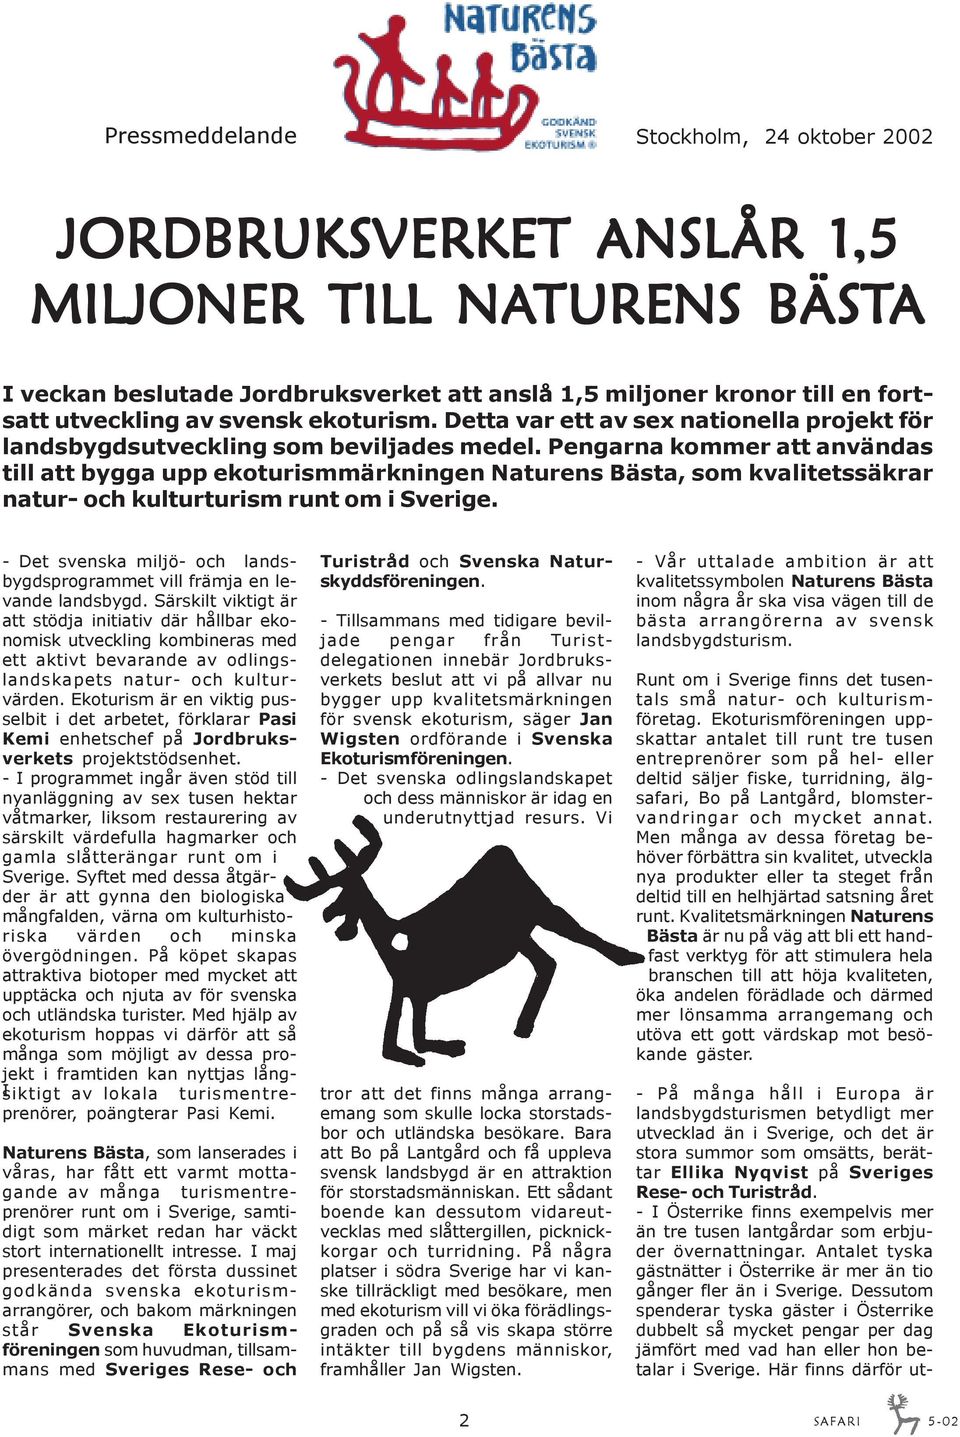 Pengarna kommer att användas till att bygga upp ekoturismmärkningen Naturens Bästa, som kvalitetssäkrar natur- och kulturturism runt om i Sverige.